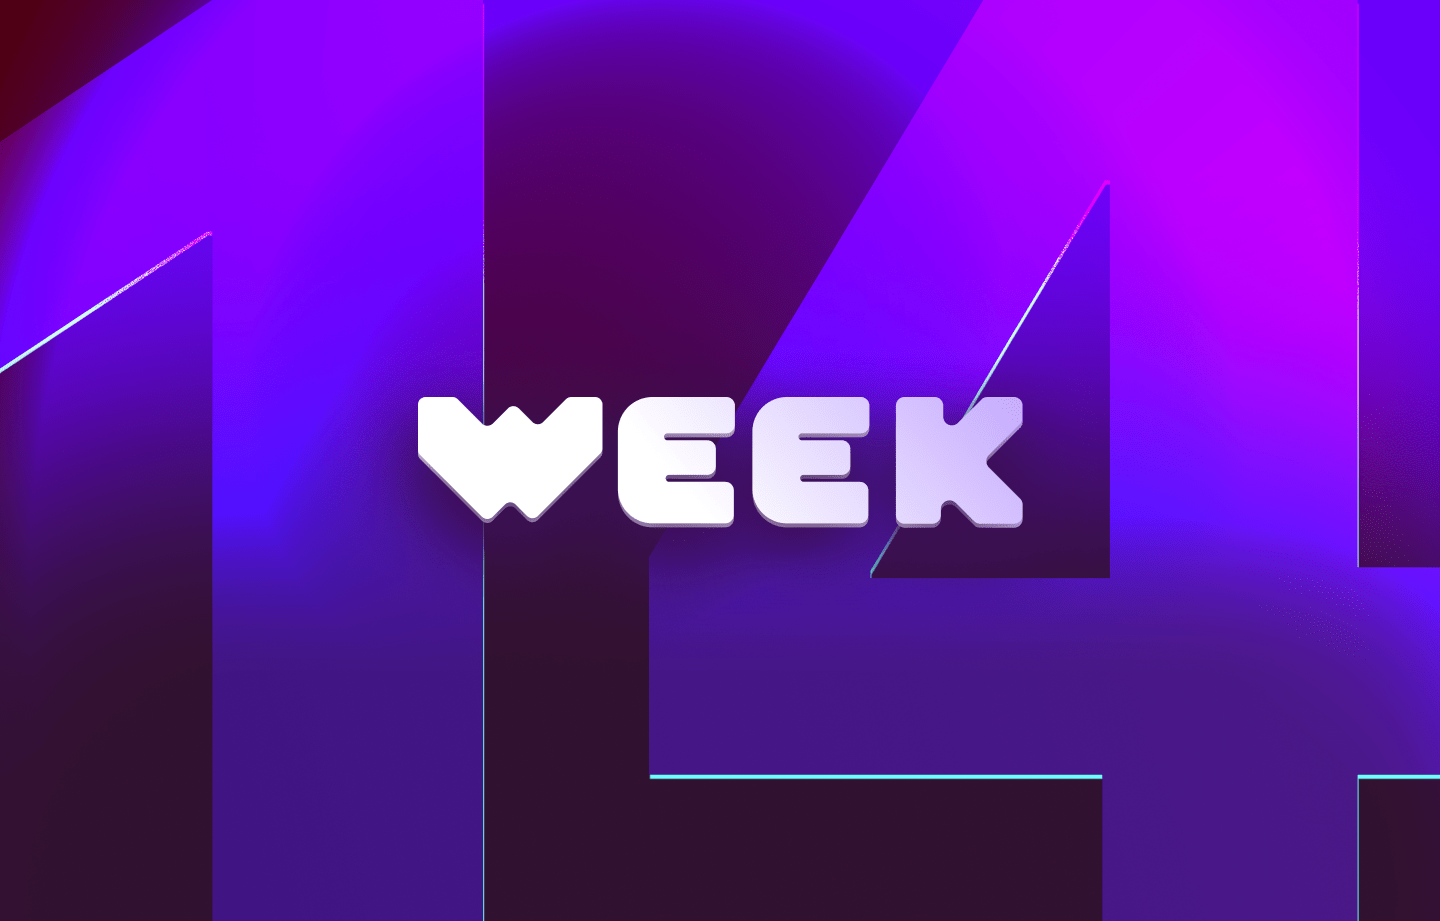 This week in web3 #14